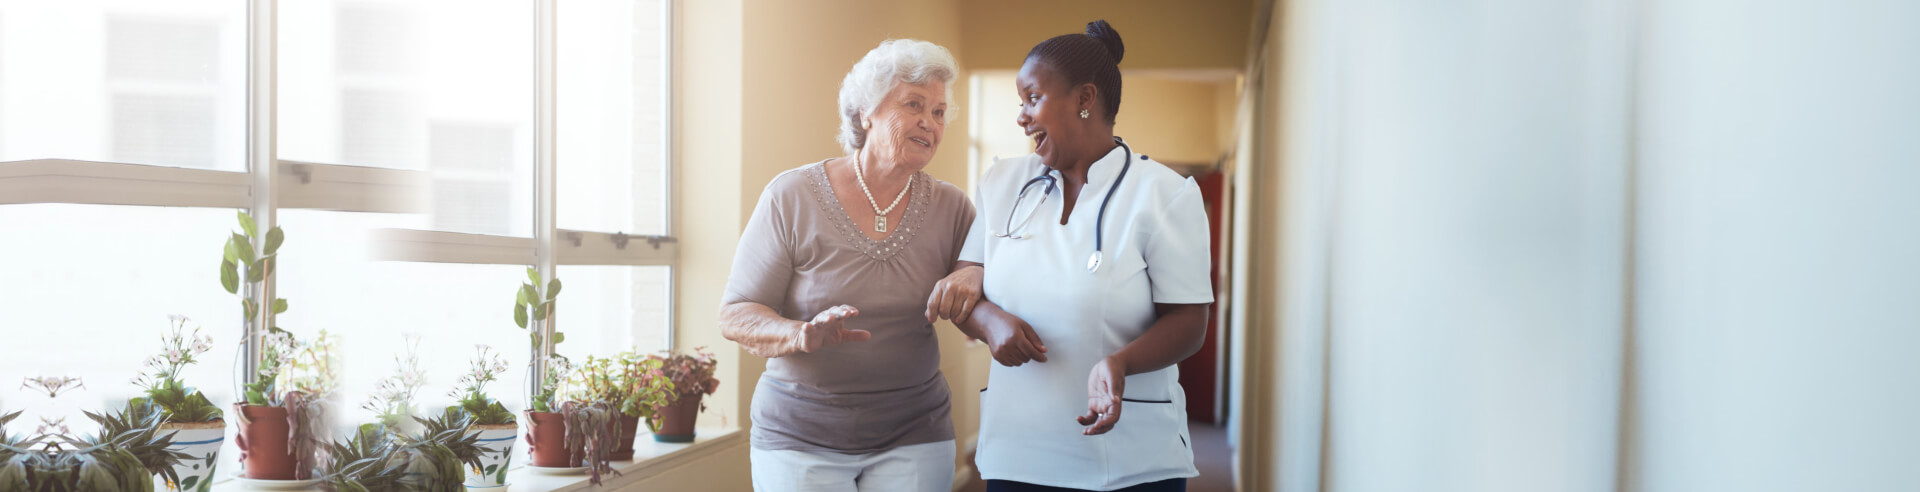 caregiver assisting senior woman in walking